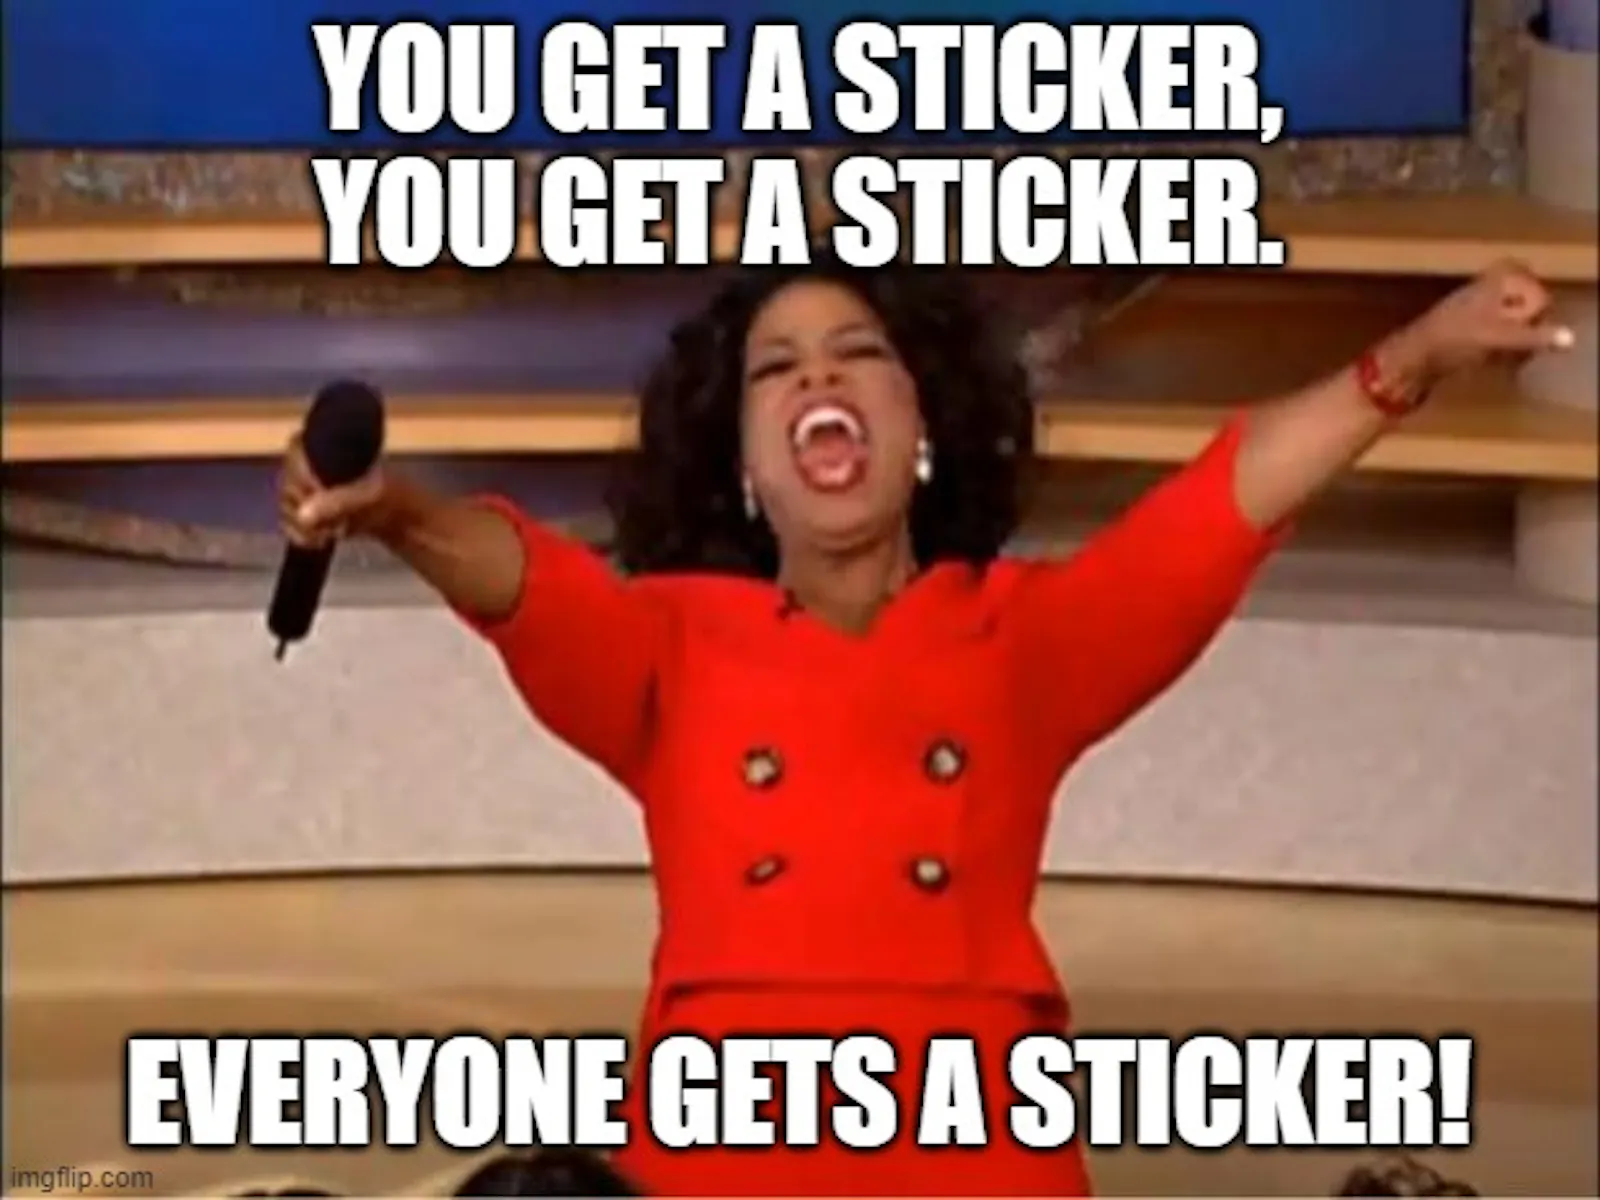 Oprah Meme "Everyone gets". In diesem Fall kriegt jede*r einen Sticker.